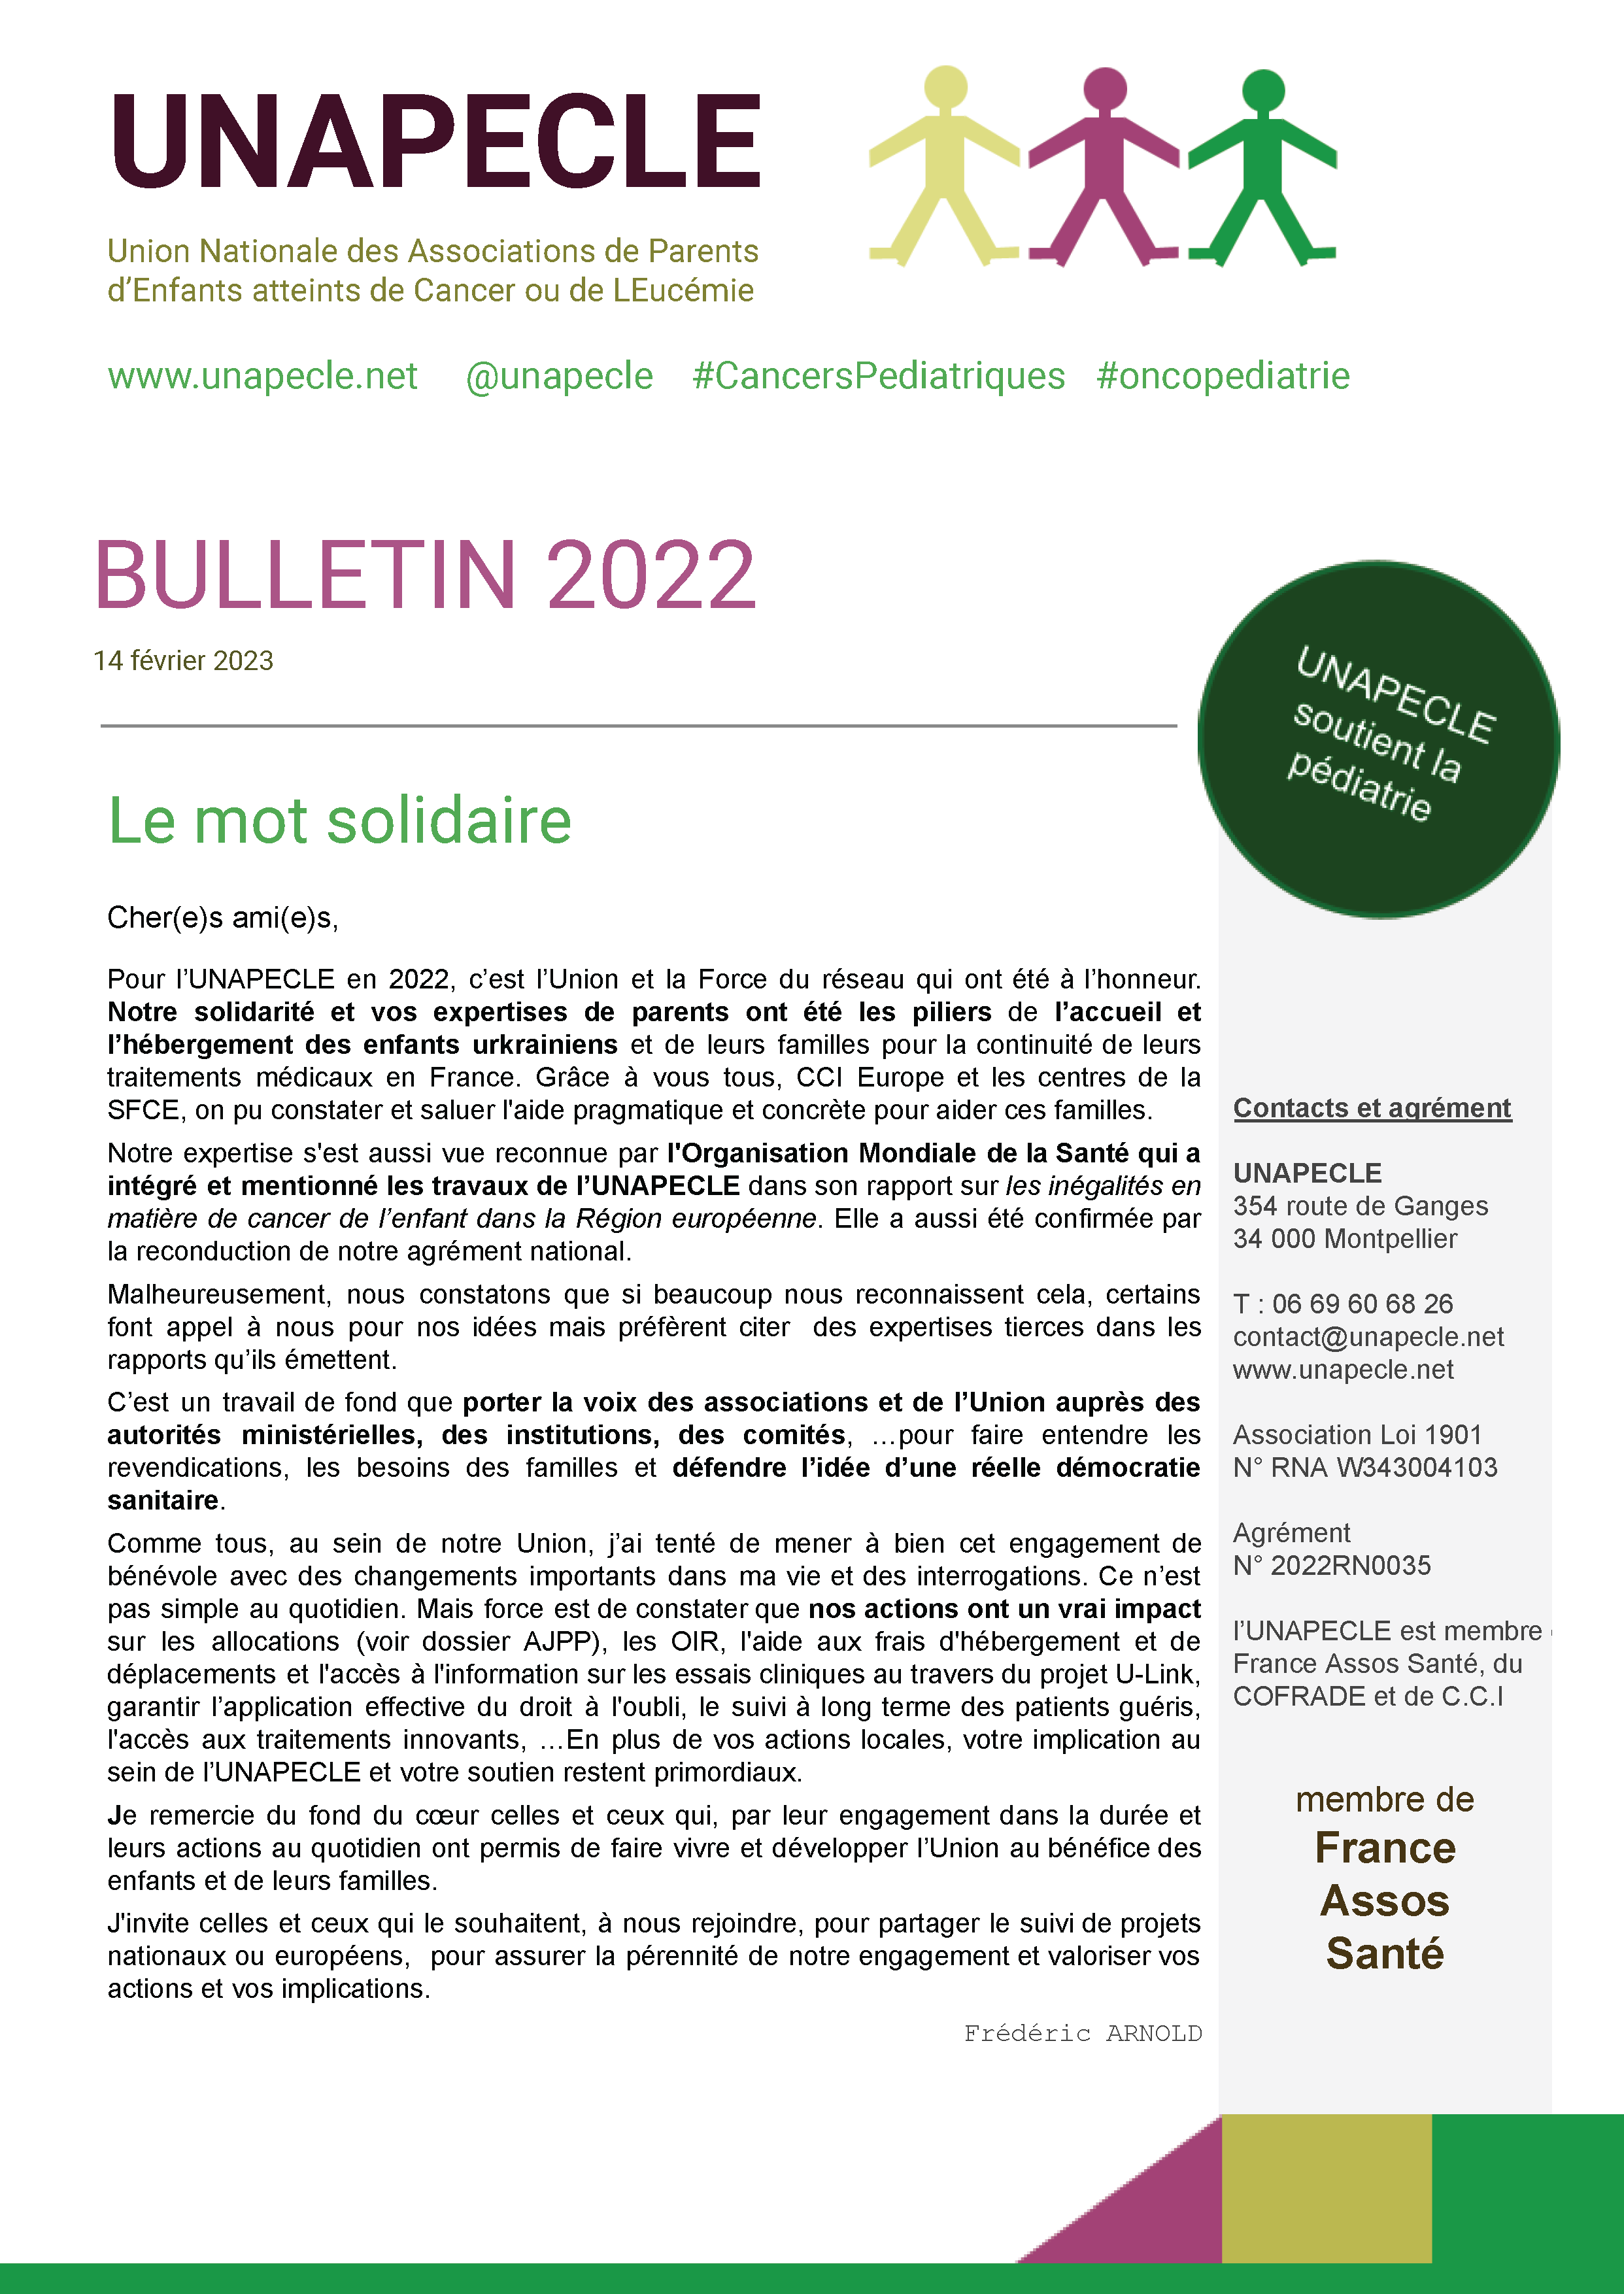 couverture du Bulletin 2022 de l'UNAPECLE